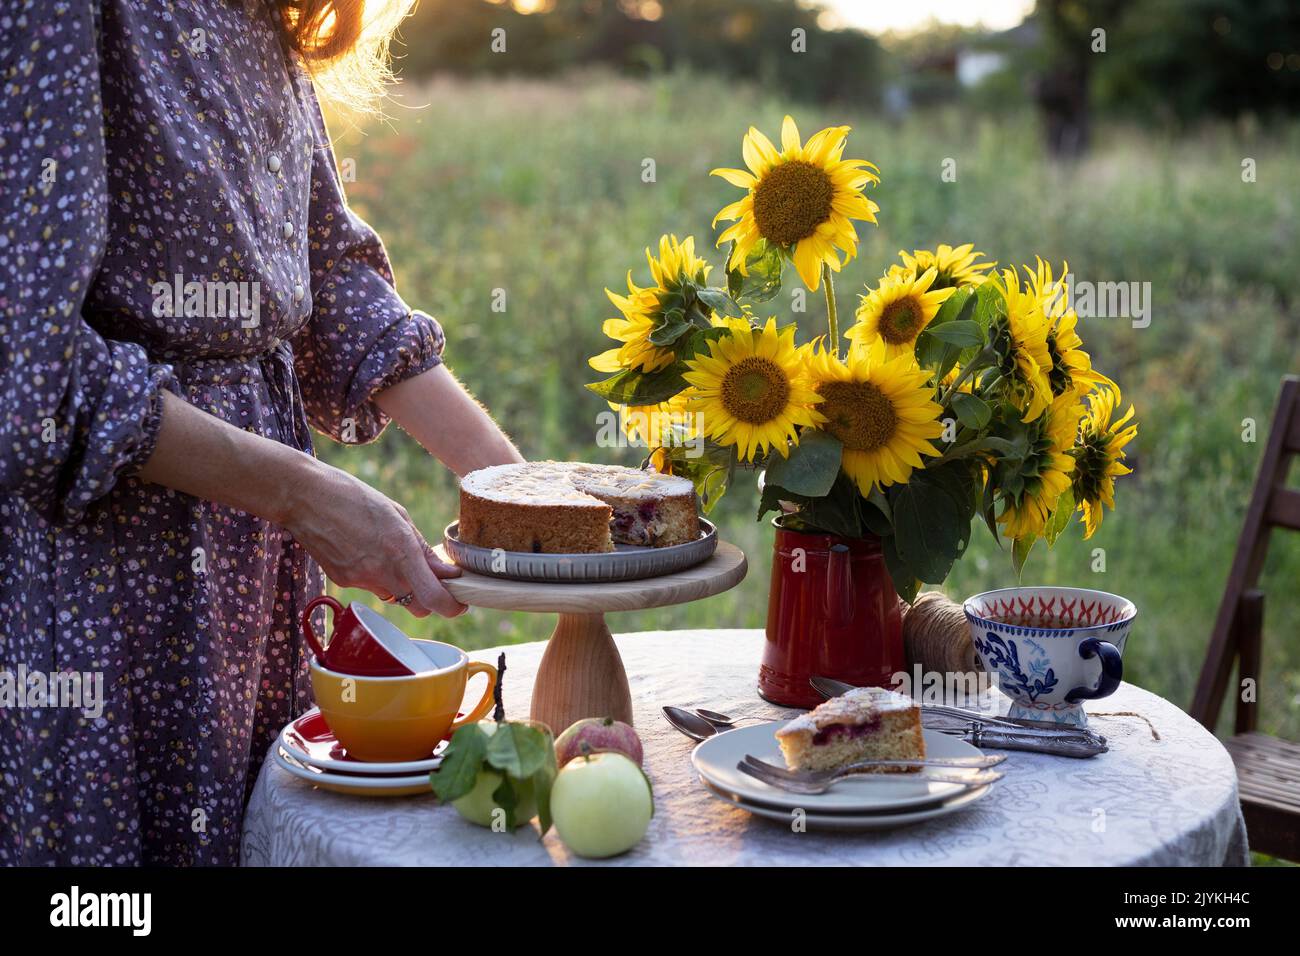 petite fille servant table à thé dans le jardin. tarte, vase avec tournesols et pommes sur une table Banque D'Images